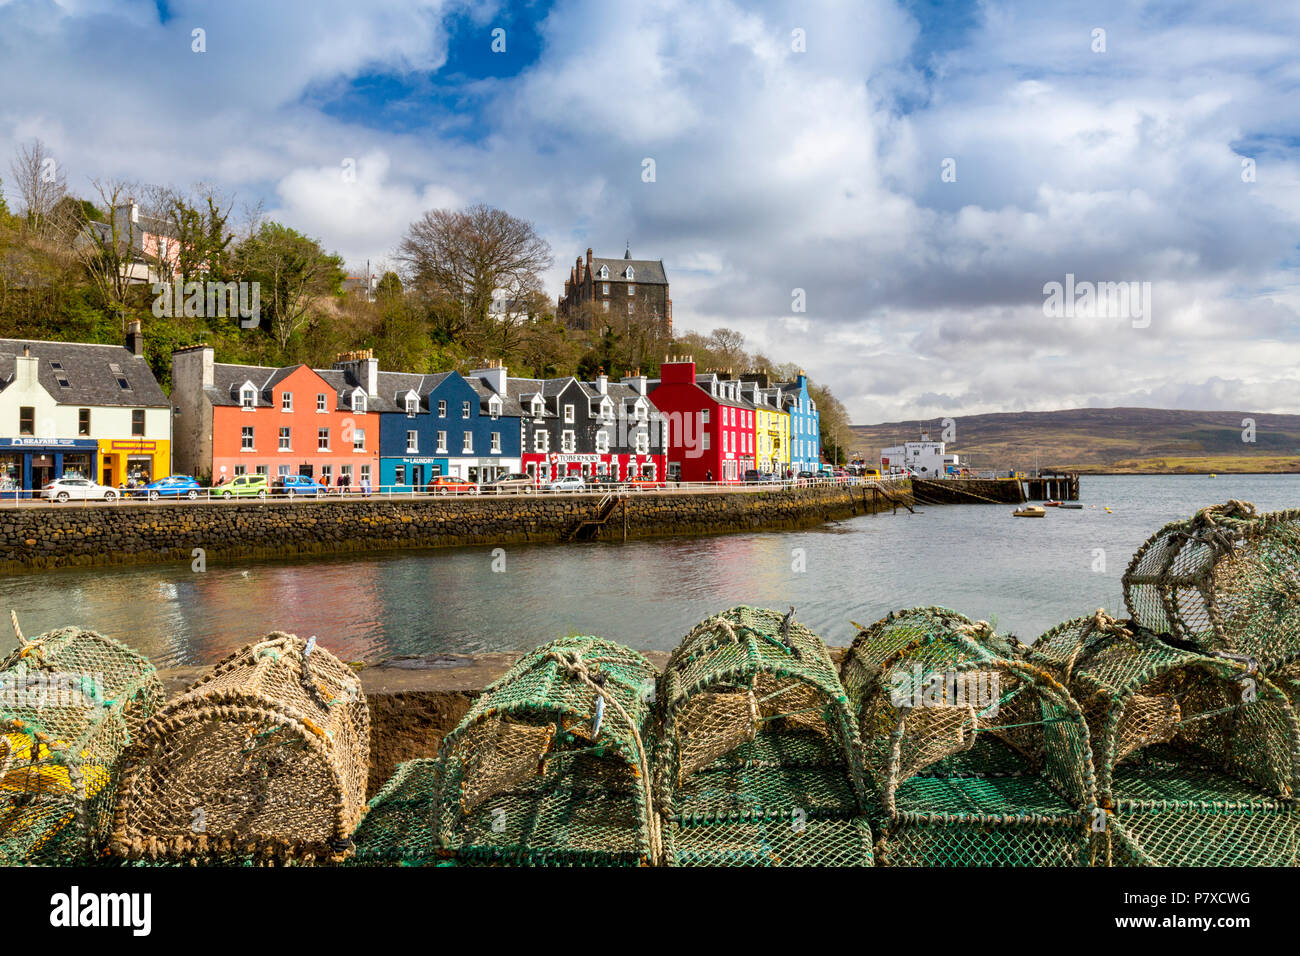 Bunte Geschäfte, Bars, Restaurants, Hotels und Häuser der historischen Hafen in Tobermory, Isle of Mull, Argyll und Bute, Schottland, Großbritannien Stockfoto